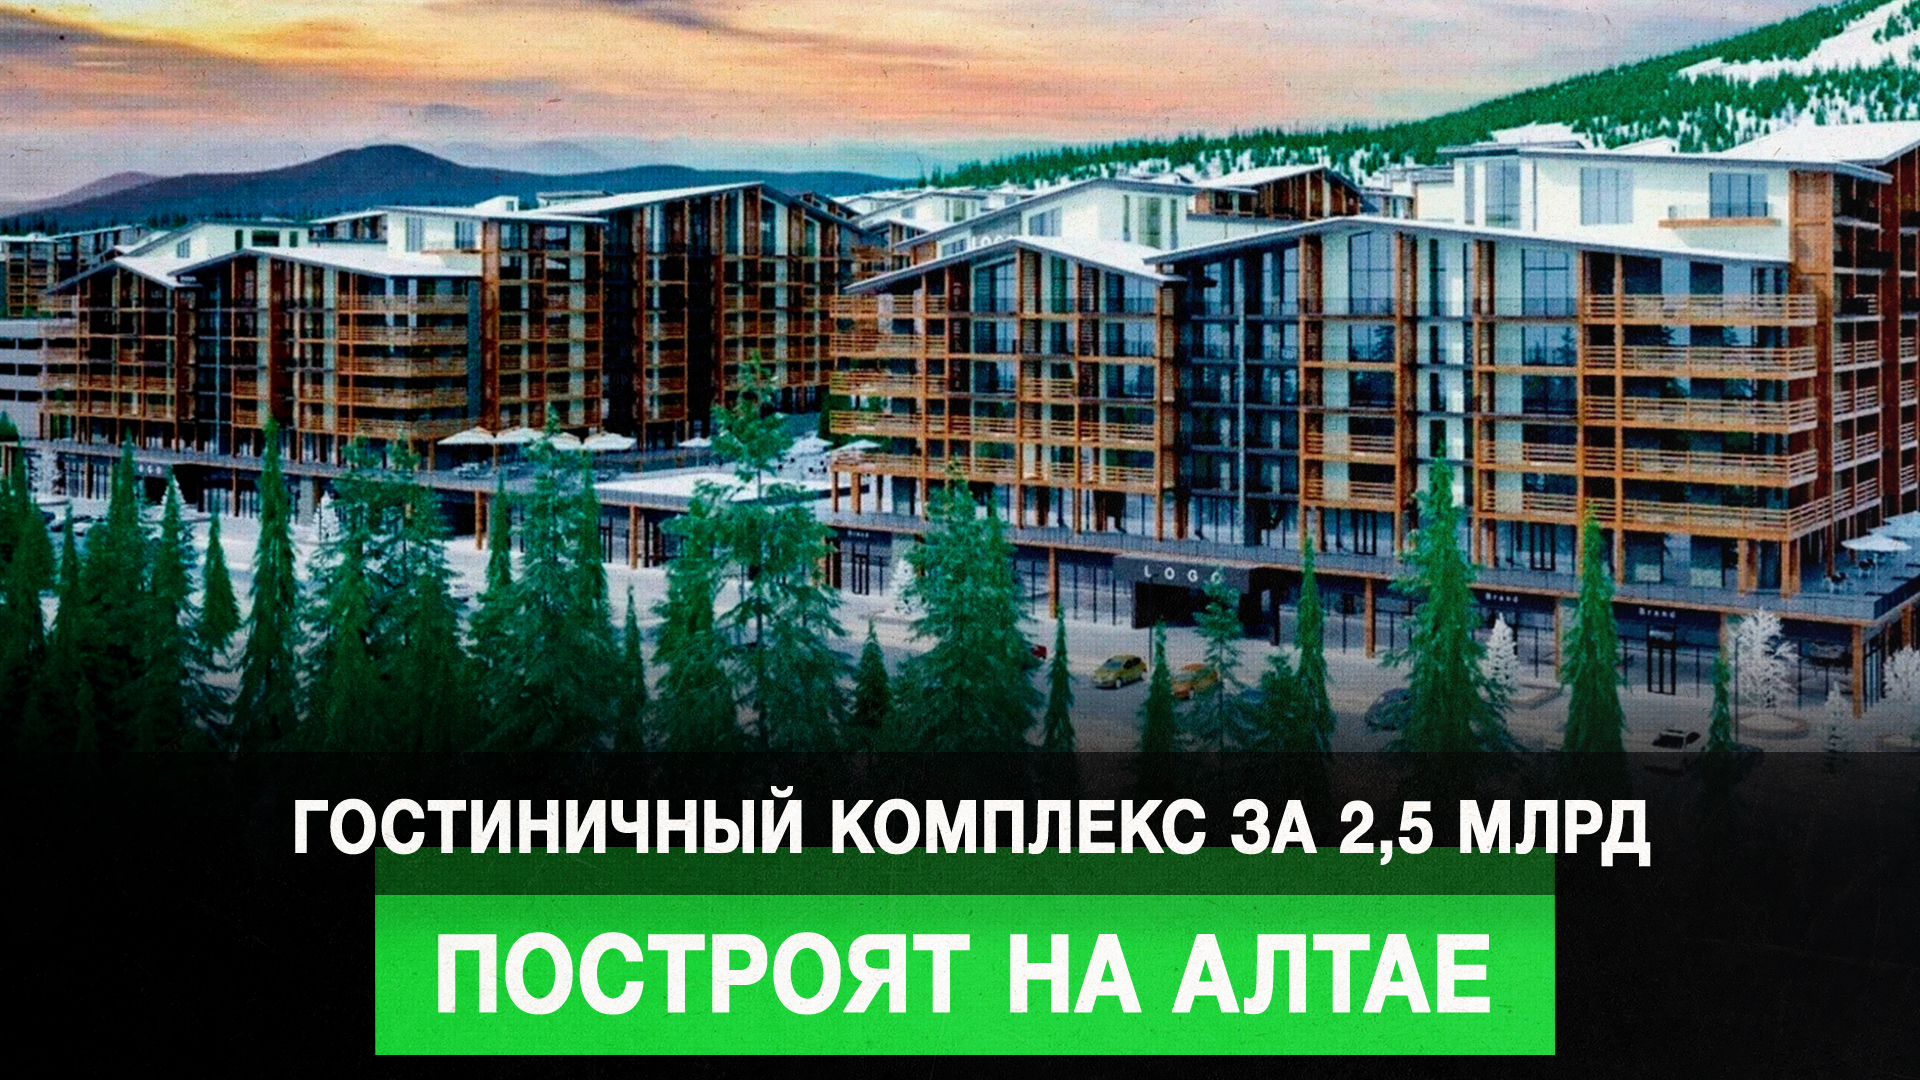 Гостиничный комплекс за 2,5 млрд построят на Алтае